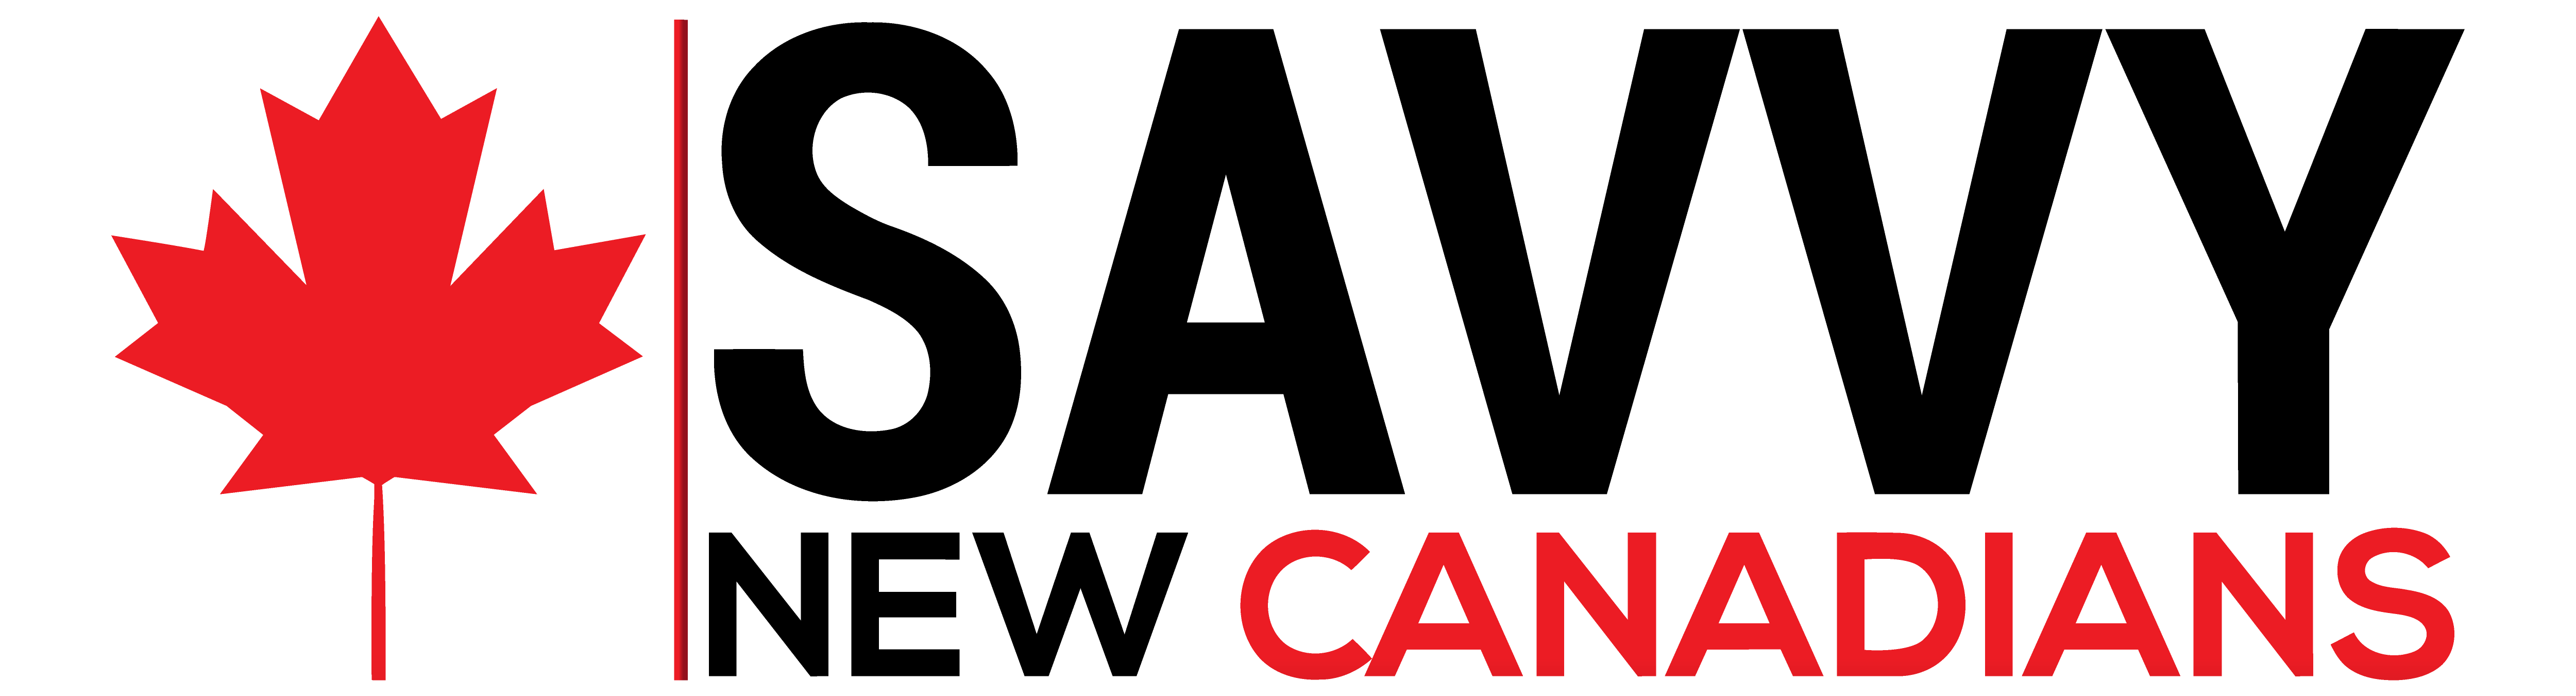 Logo SavvyNewCanadians2.png